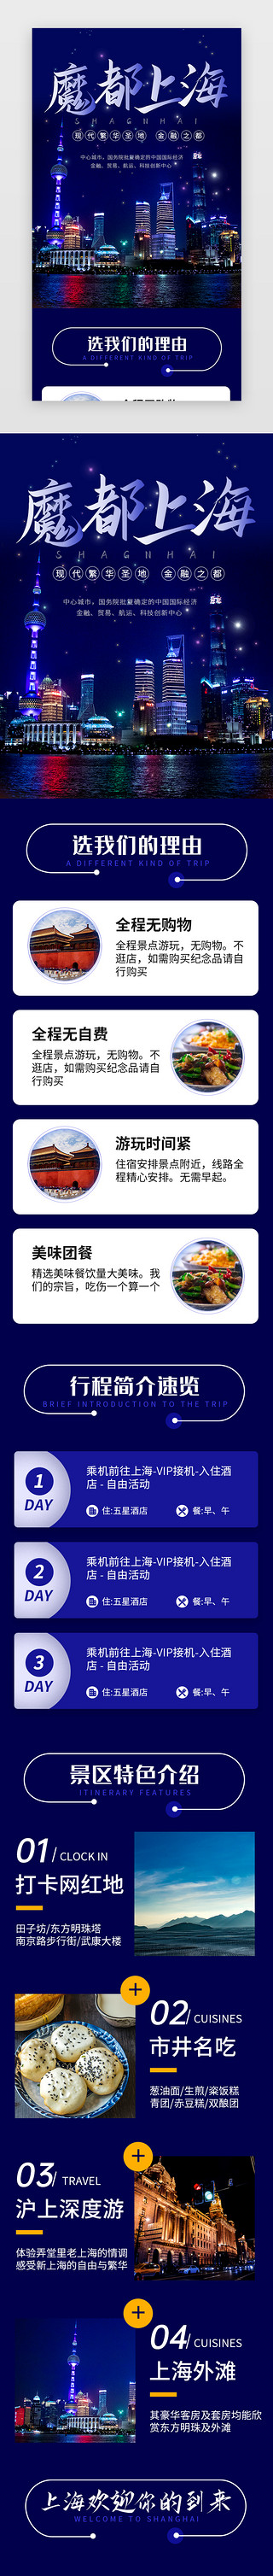 旅行水壶UI设计素材_蓝色魔都上海旅行景点介绍H5长图海报